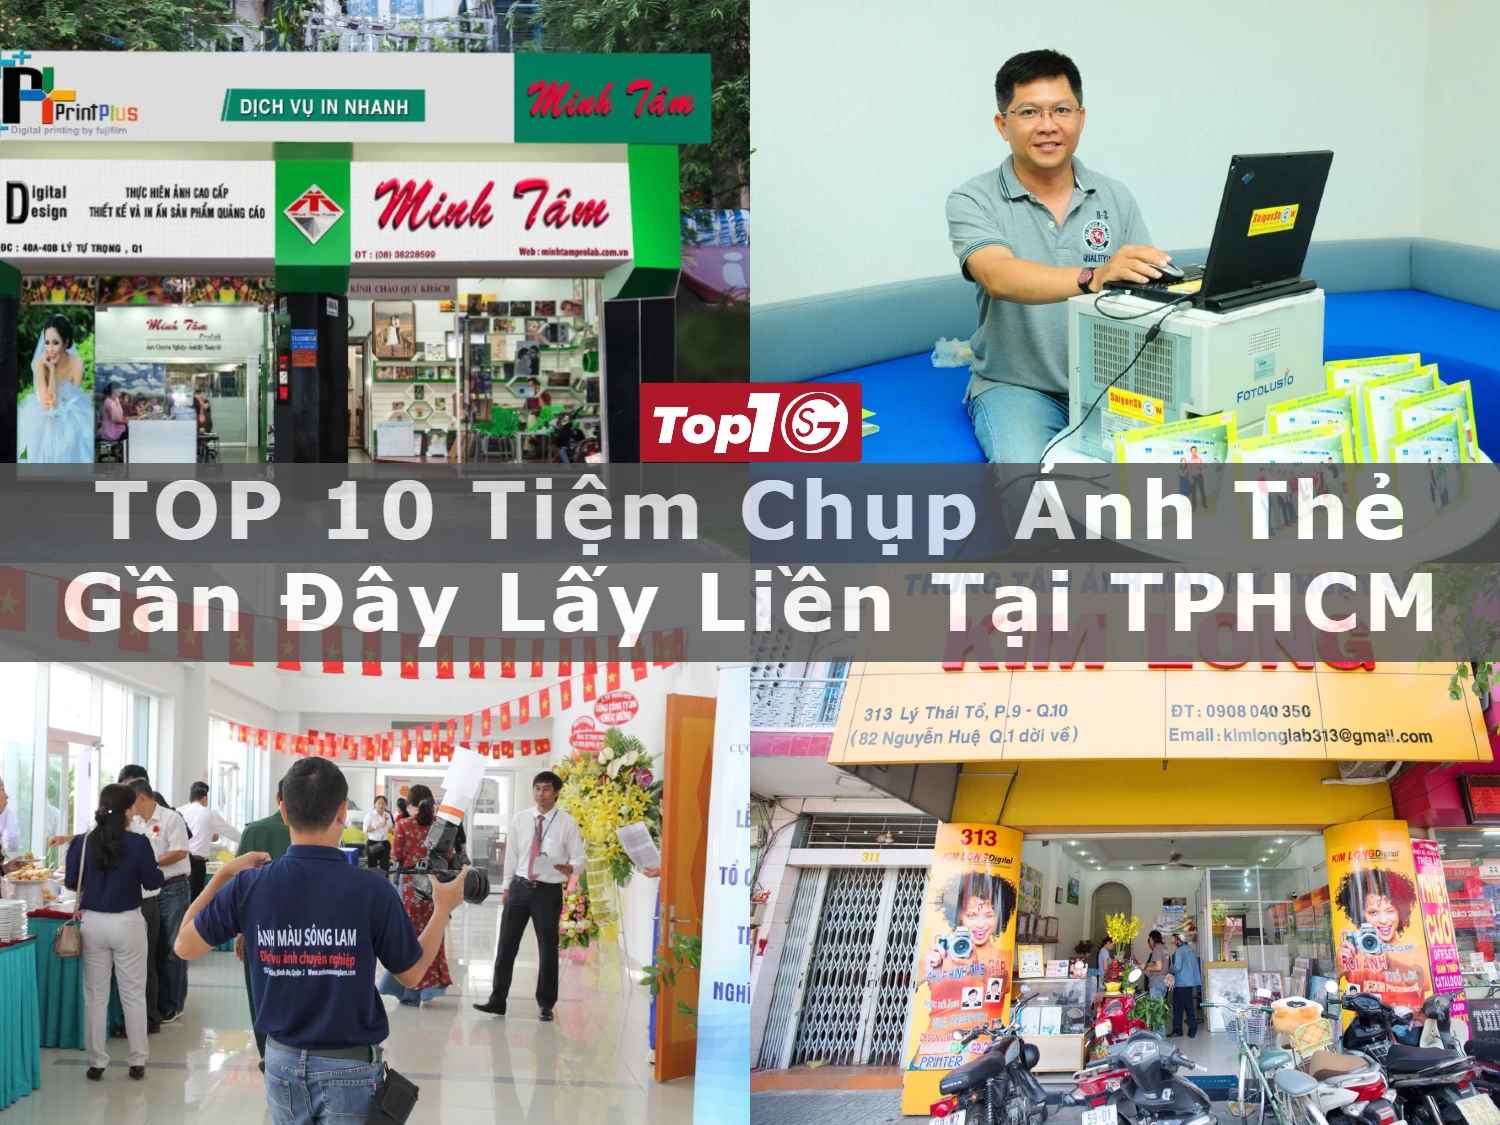 Top 10 Tiệm Chụp Ảnh Thẻ Gần Đây Lấy Liền Tại Tphcm